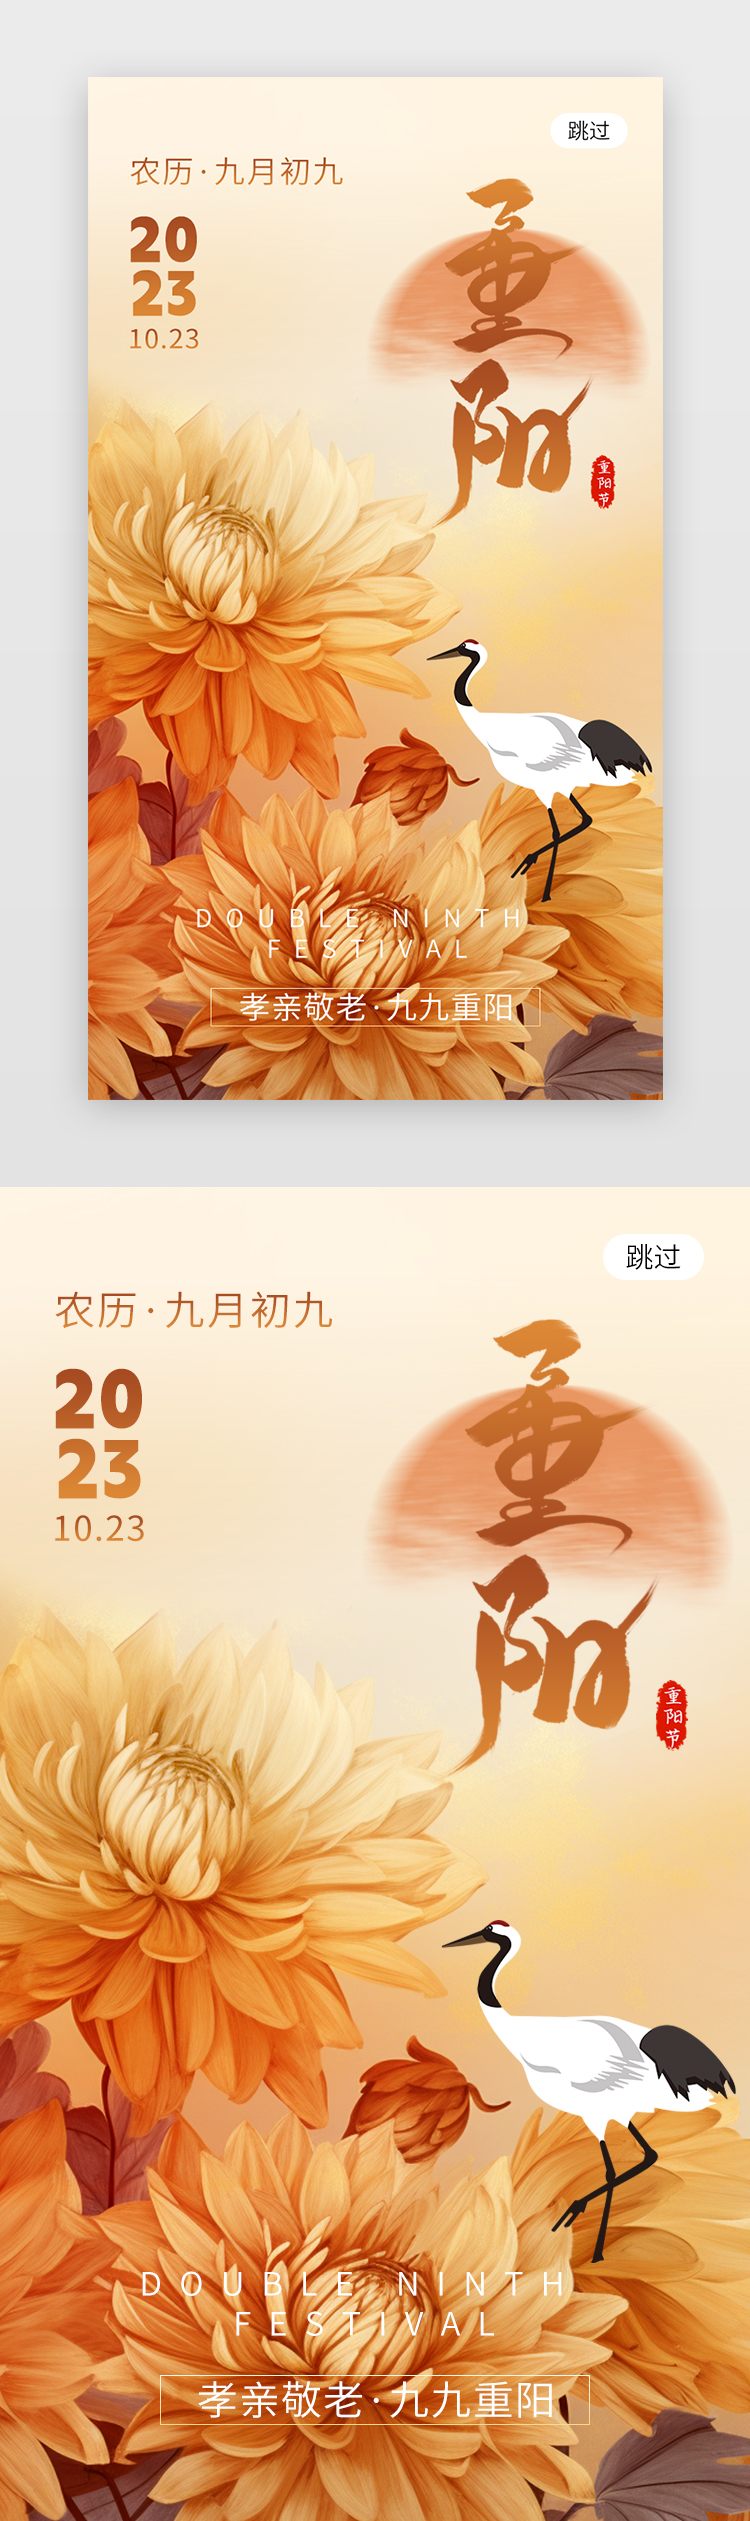 重阳节app闪屏创意黄褐色菊花图片